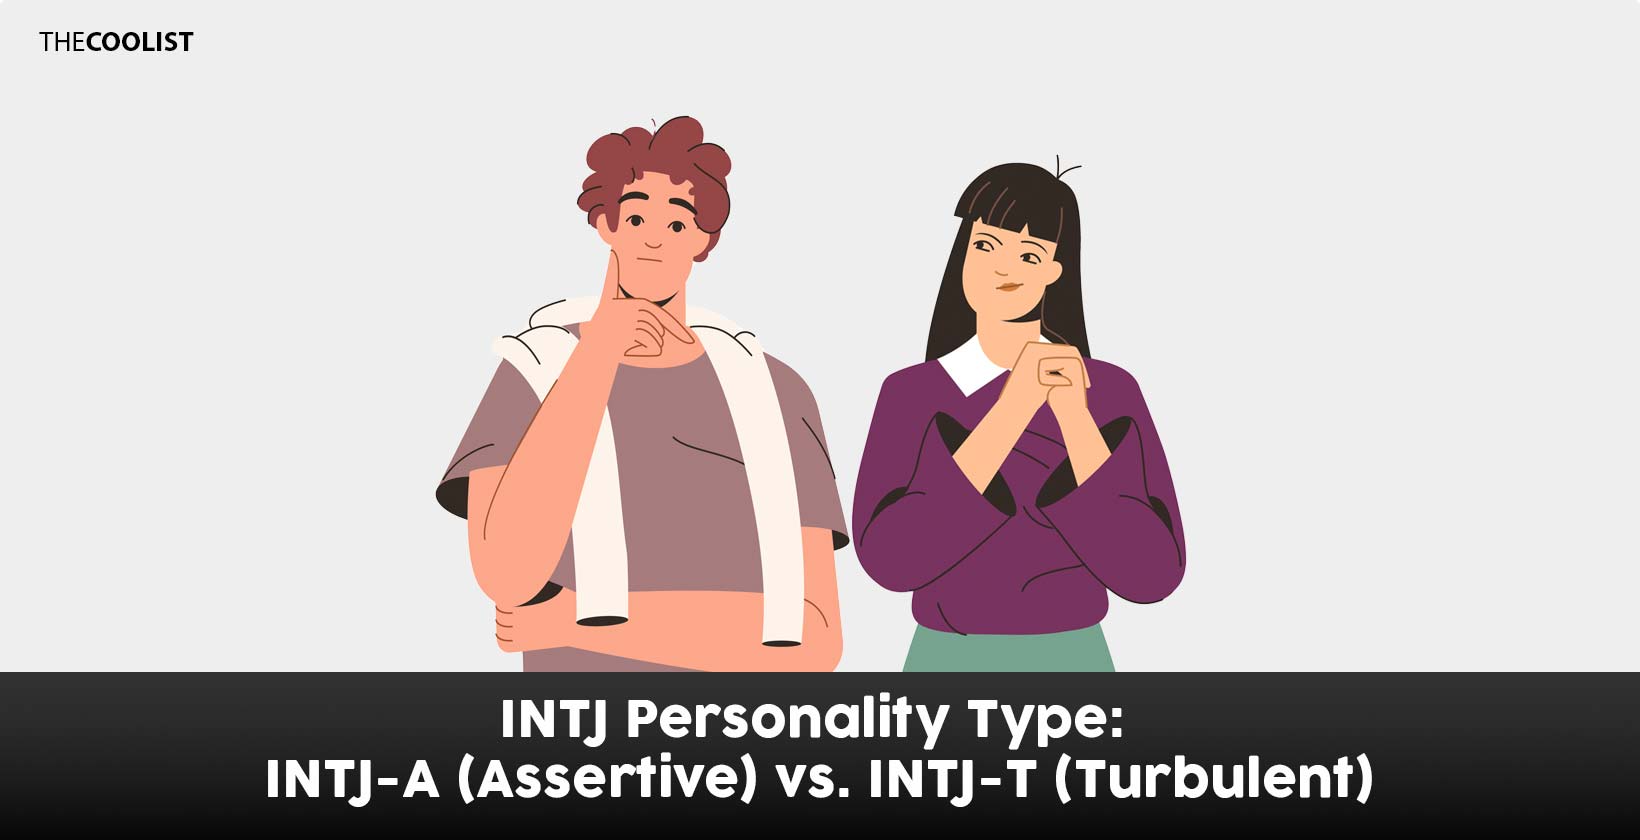 INTJ Personality Type: INTJ-A (Assertive) vs. INTJ-T (Turbulent)